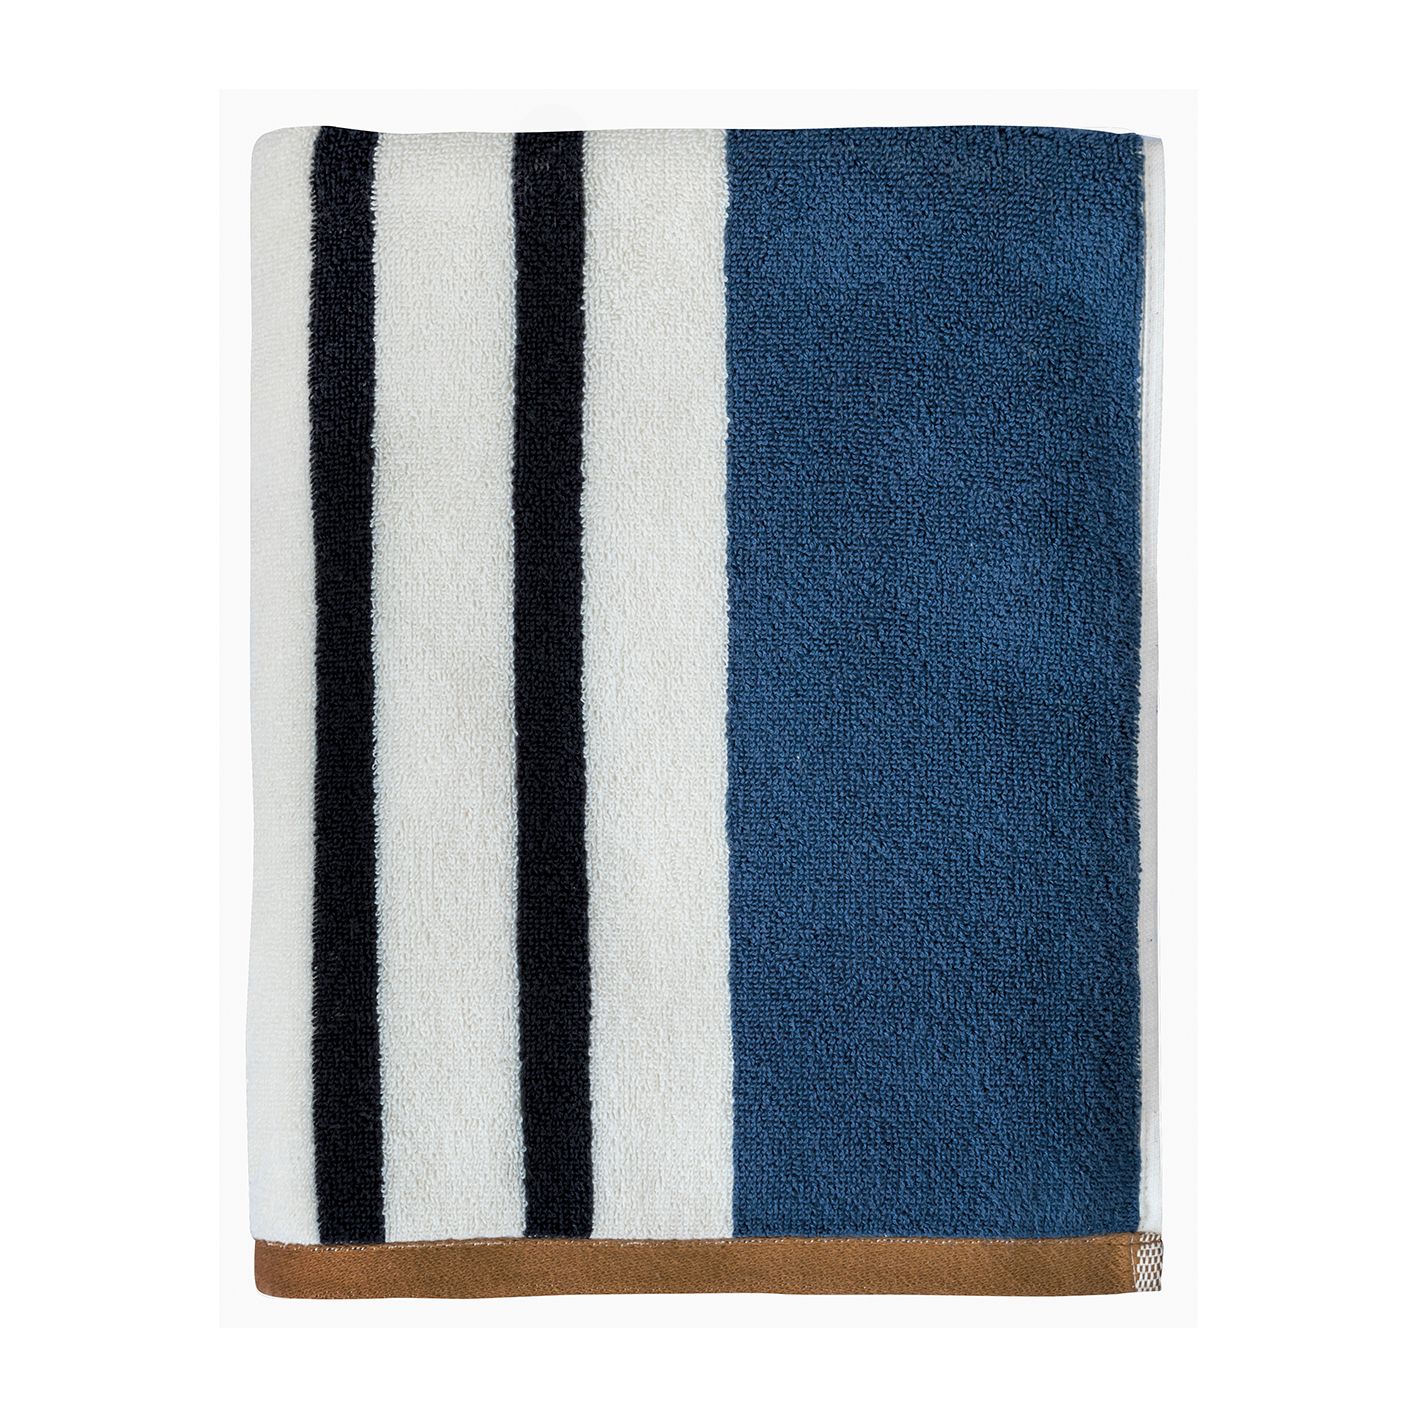 Mette Ditmer - Boudoir Bath Towel 70 x 133 cm - Orion blue